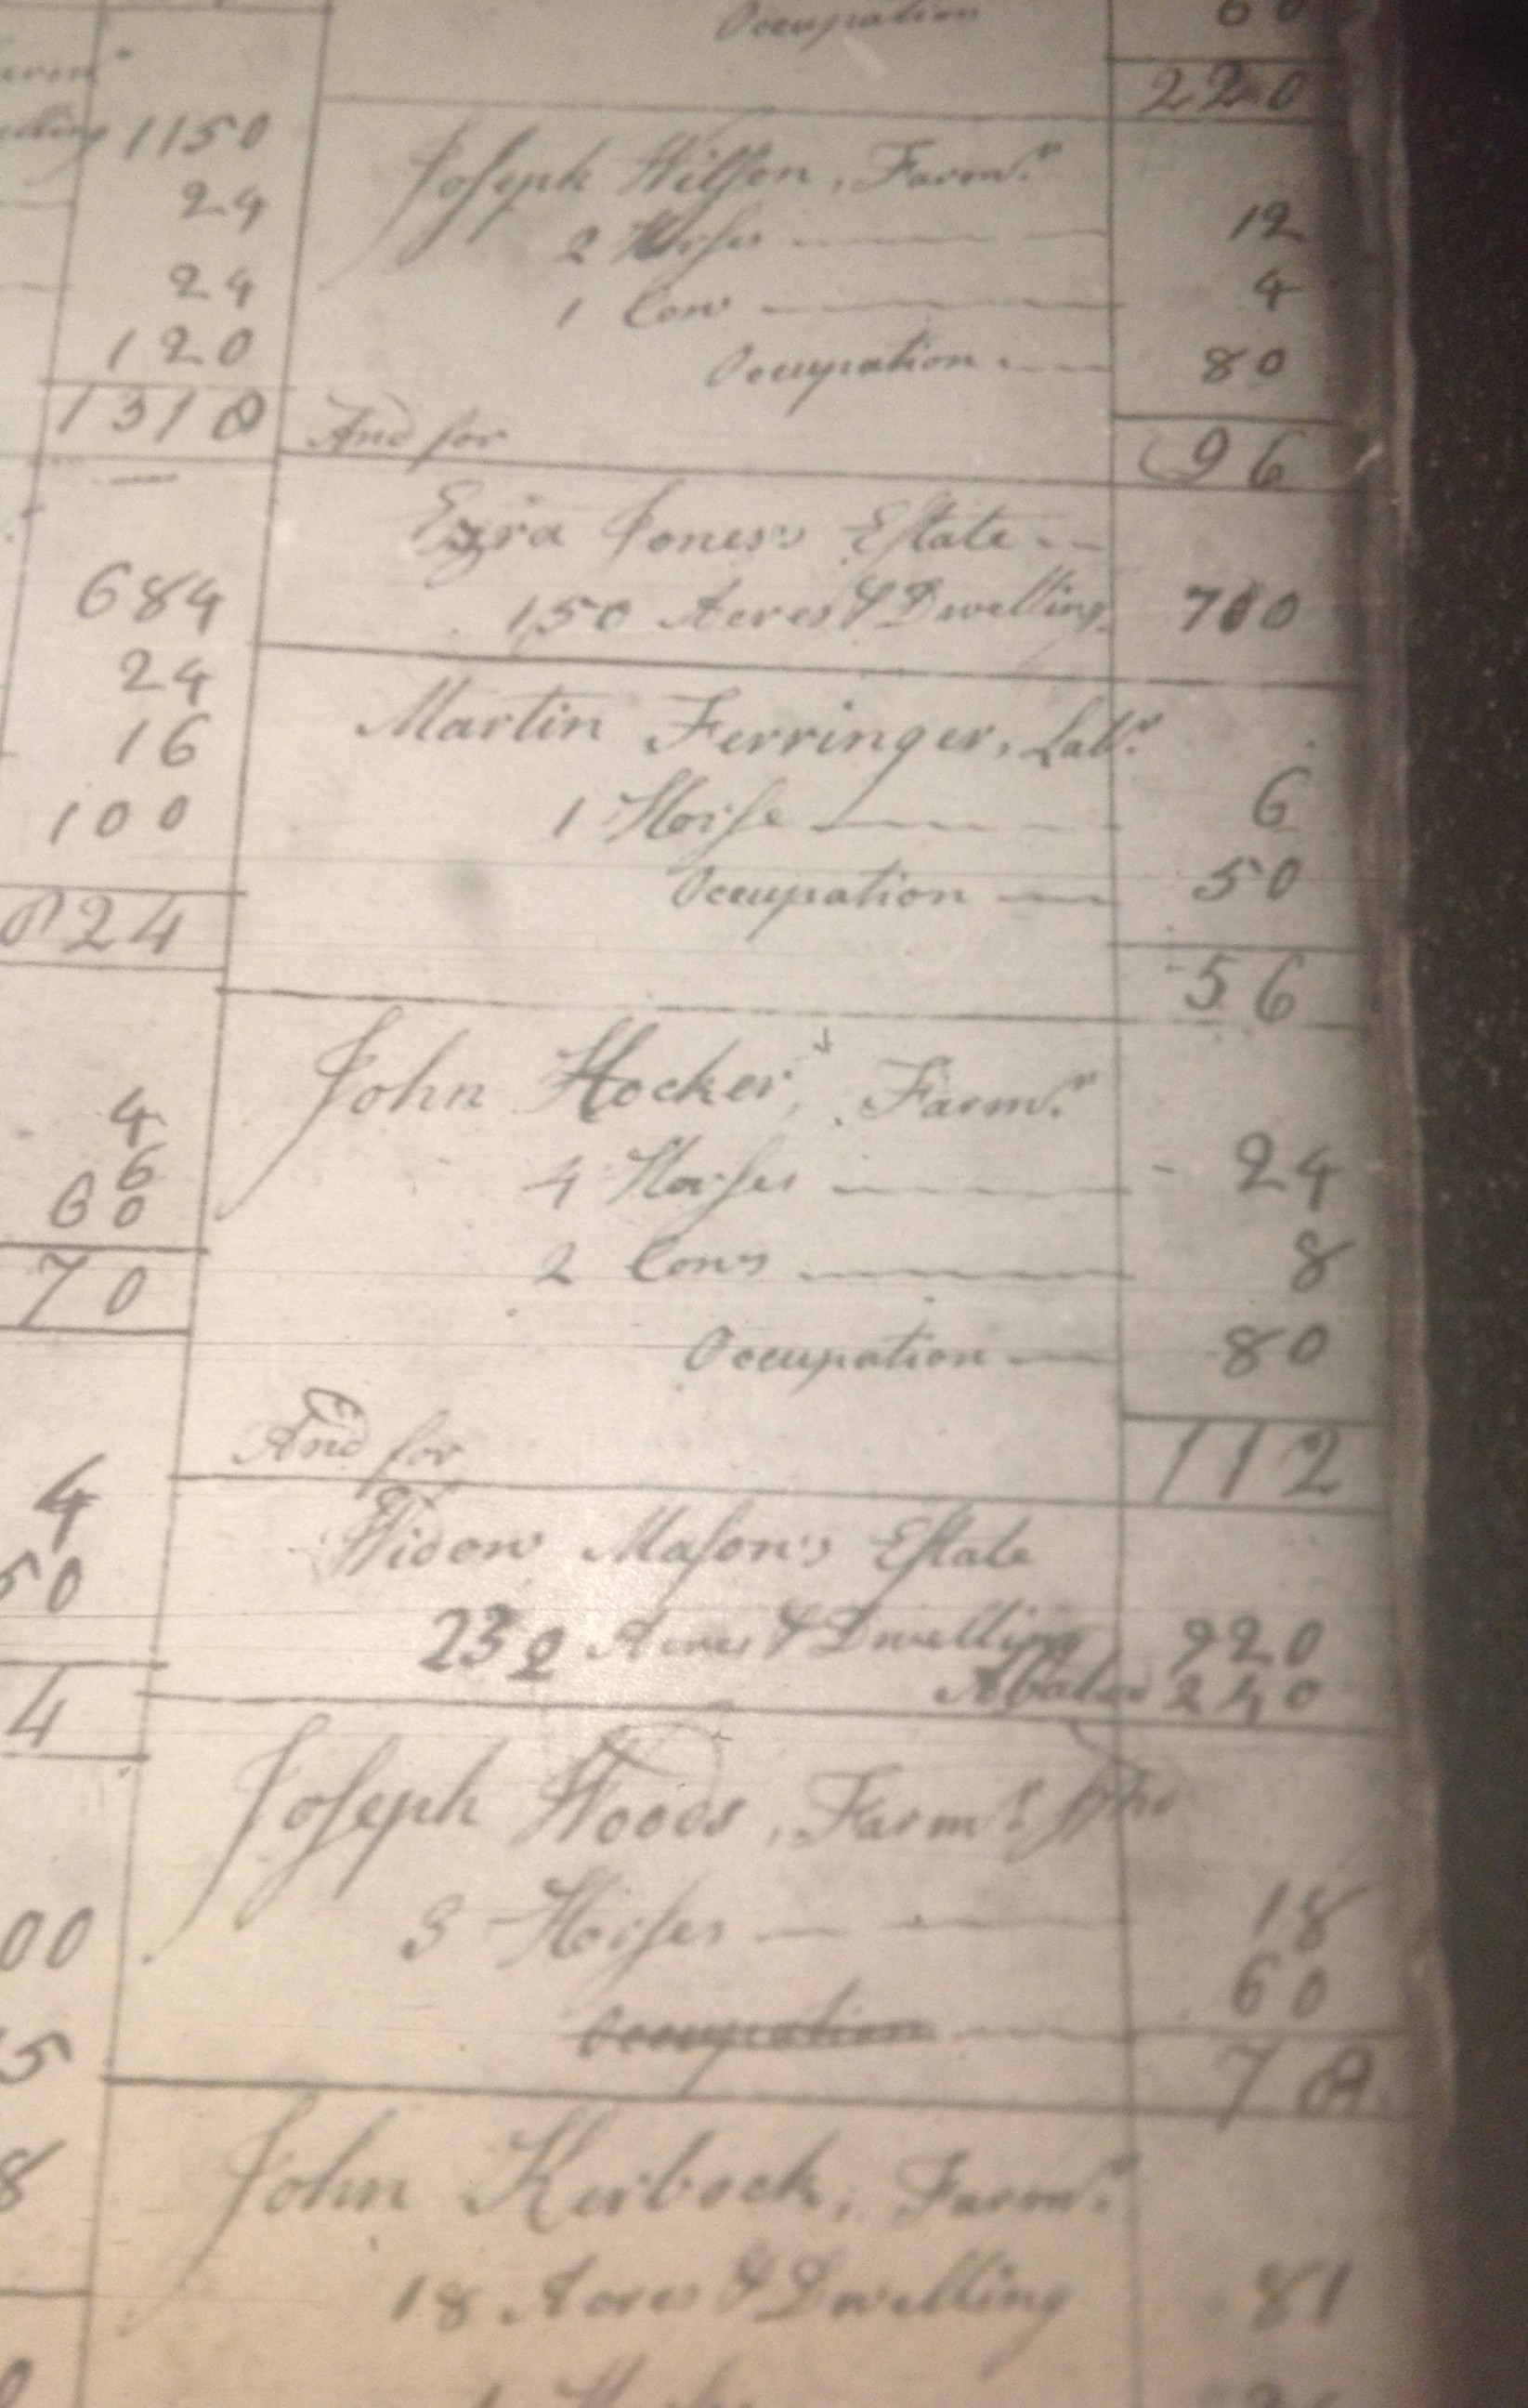 John Hocker in Whitemarsh Township Tax List